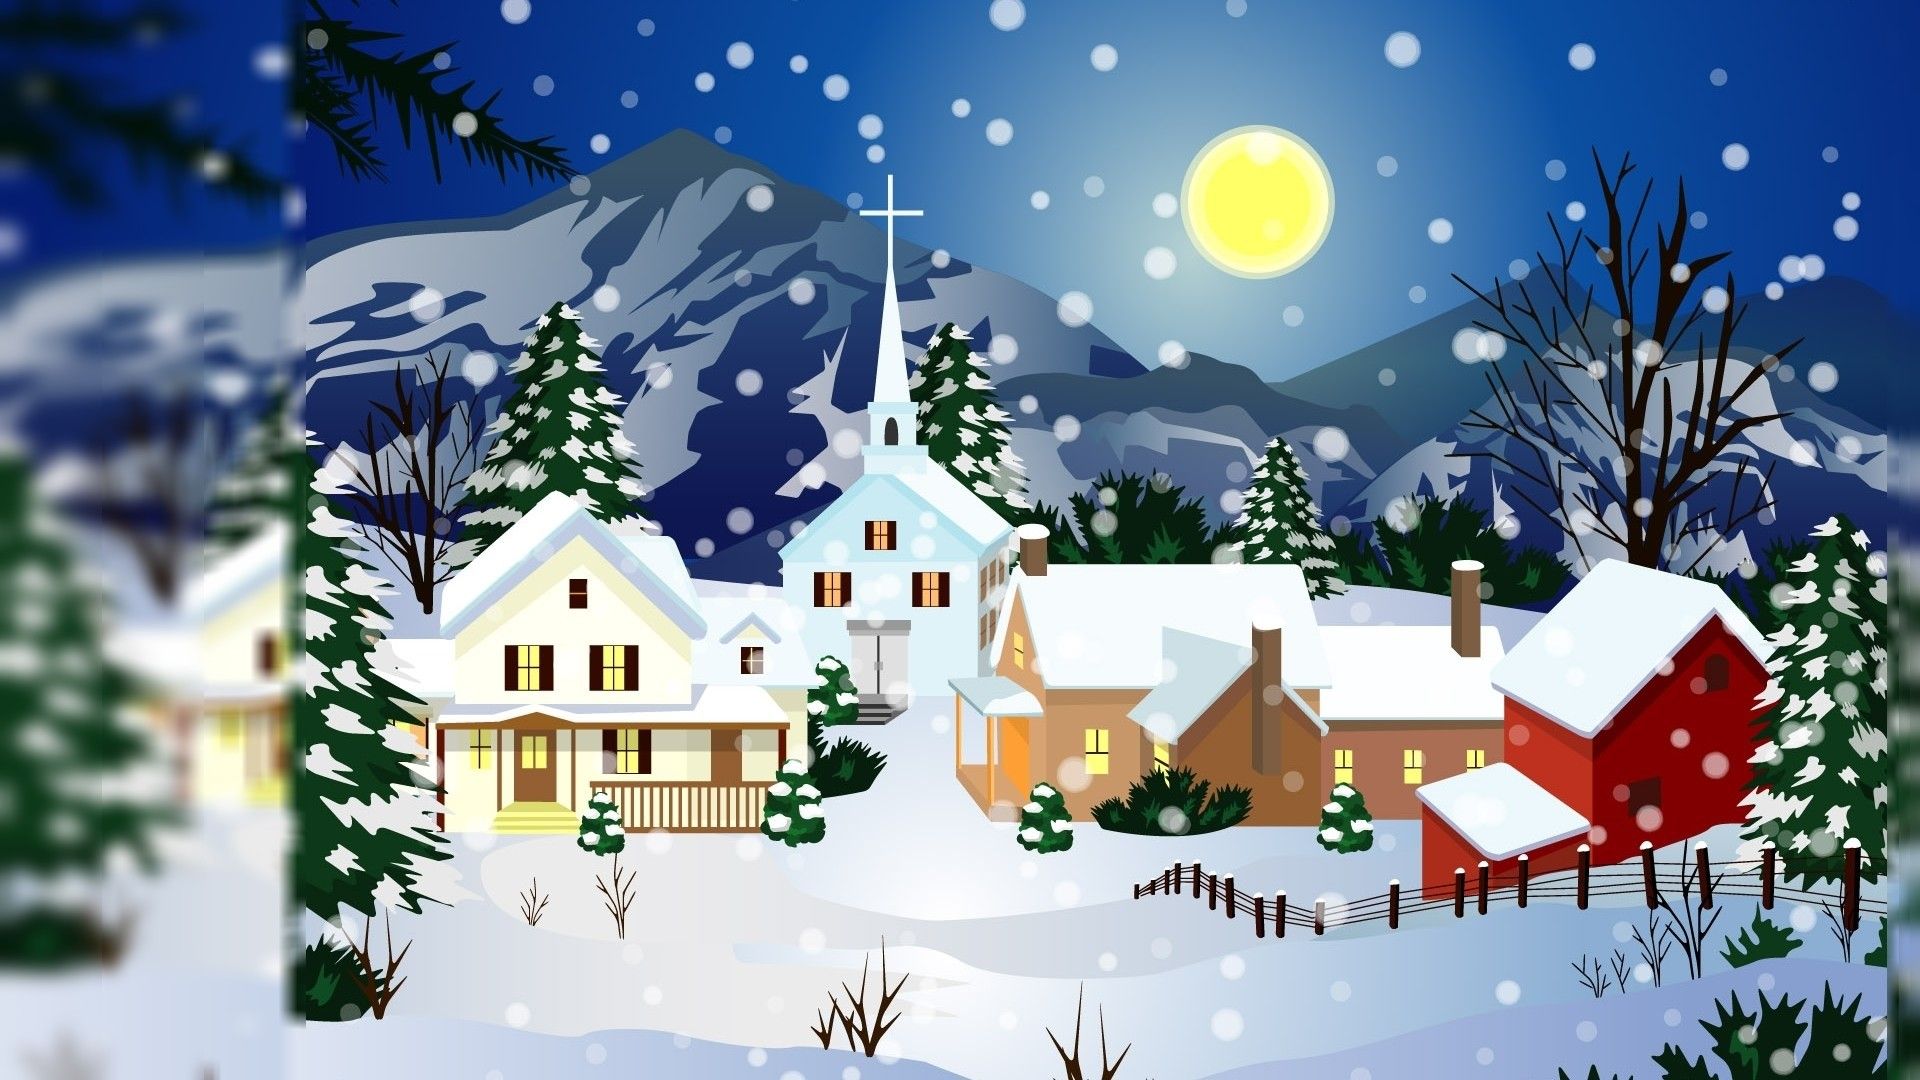 Animated Christmas Wallpapers